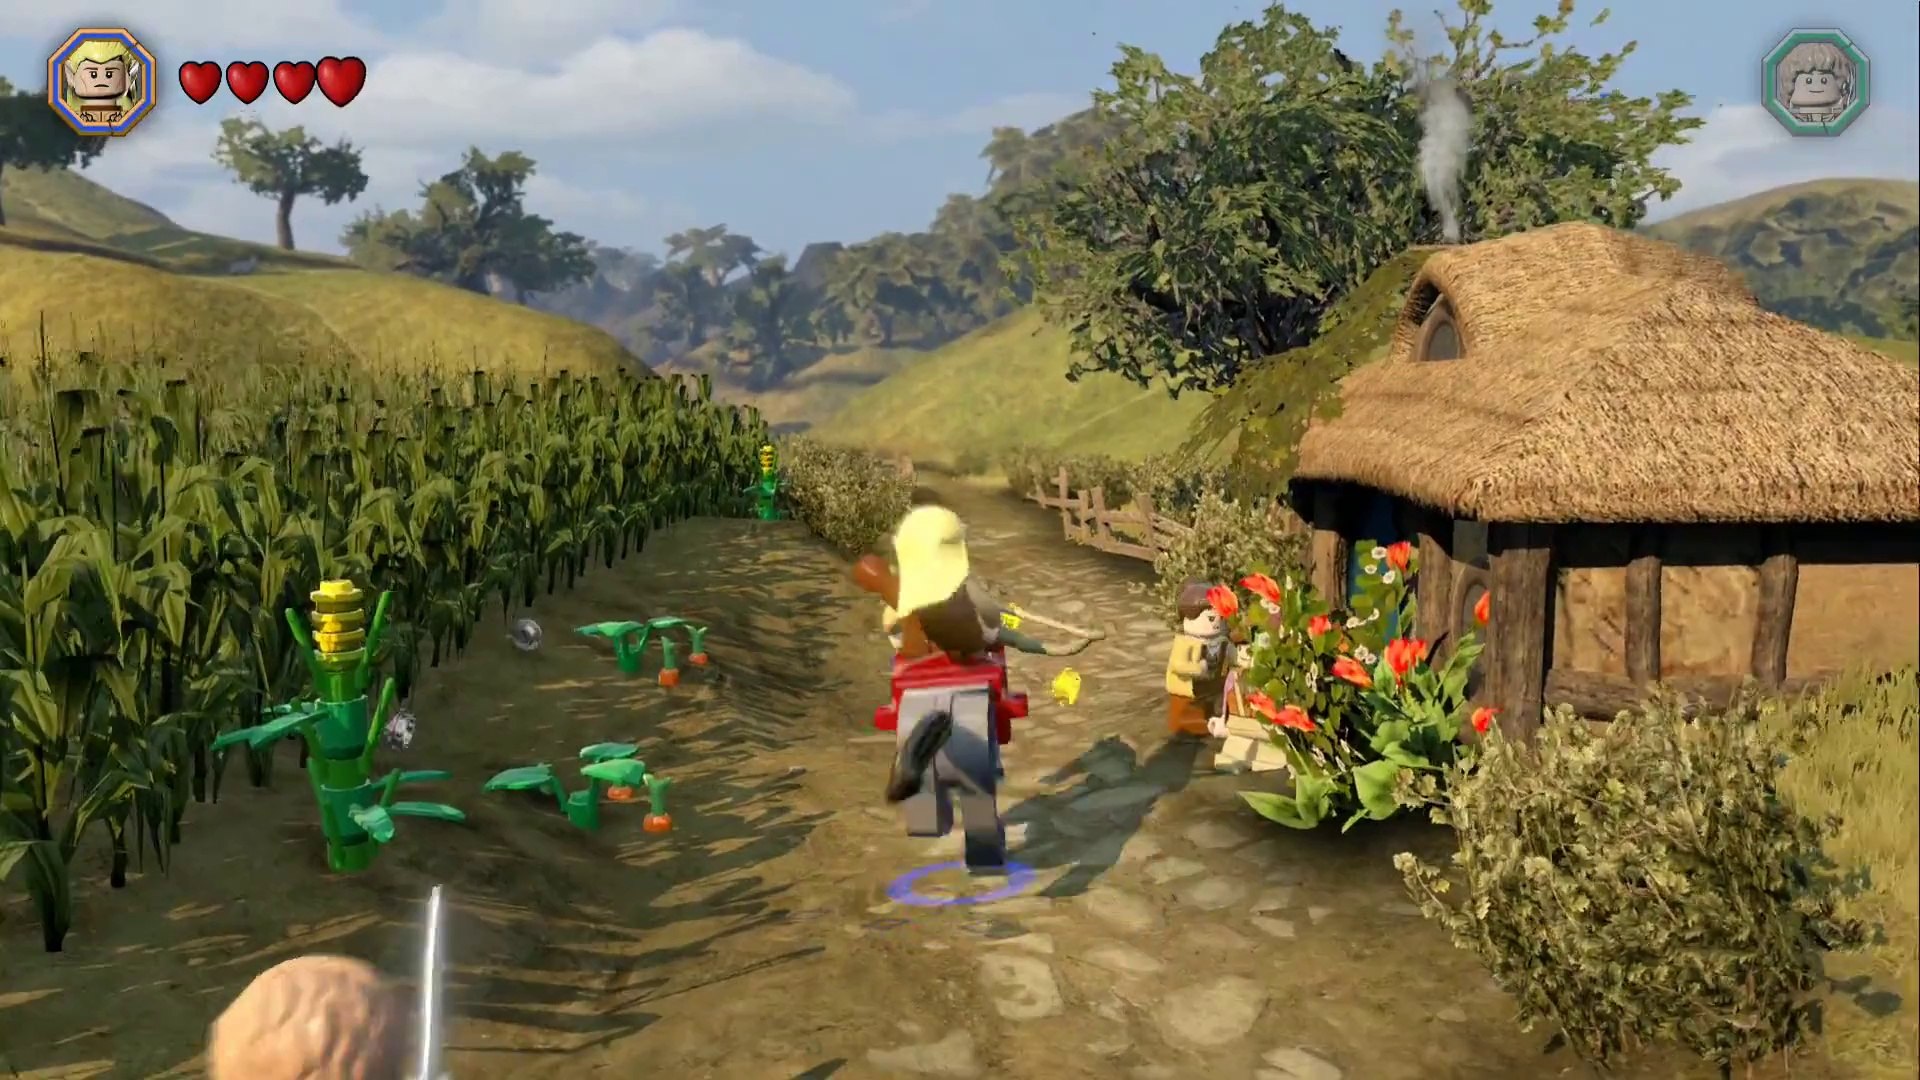 LEGO The Hobbit - Free Roam Gameplay - Hobbiton[1080P] - video Dailymotion